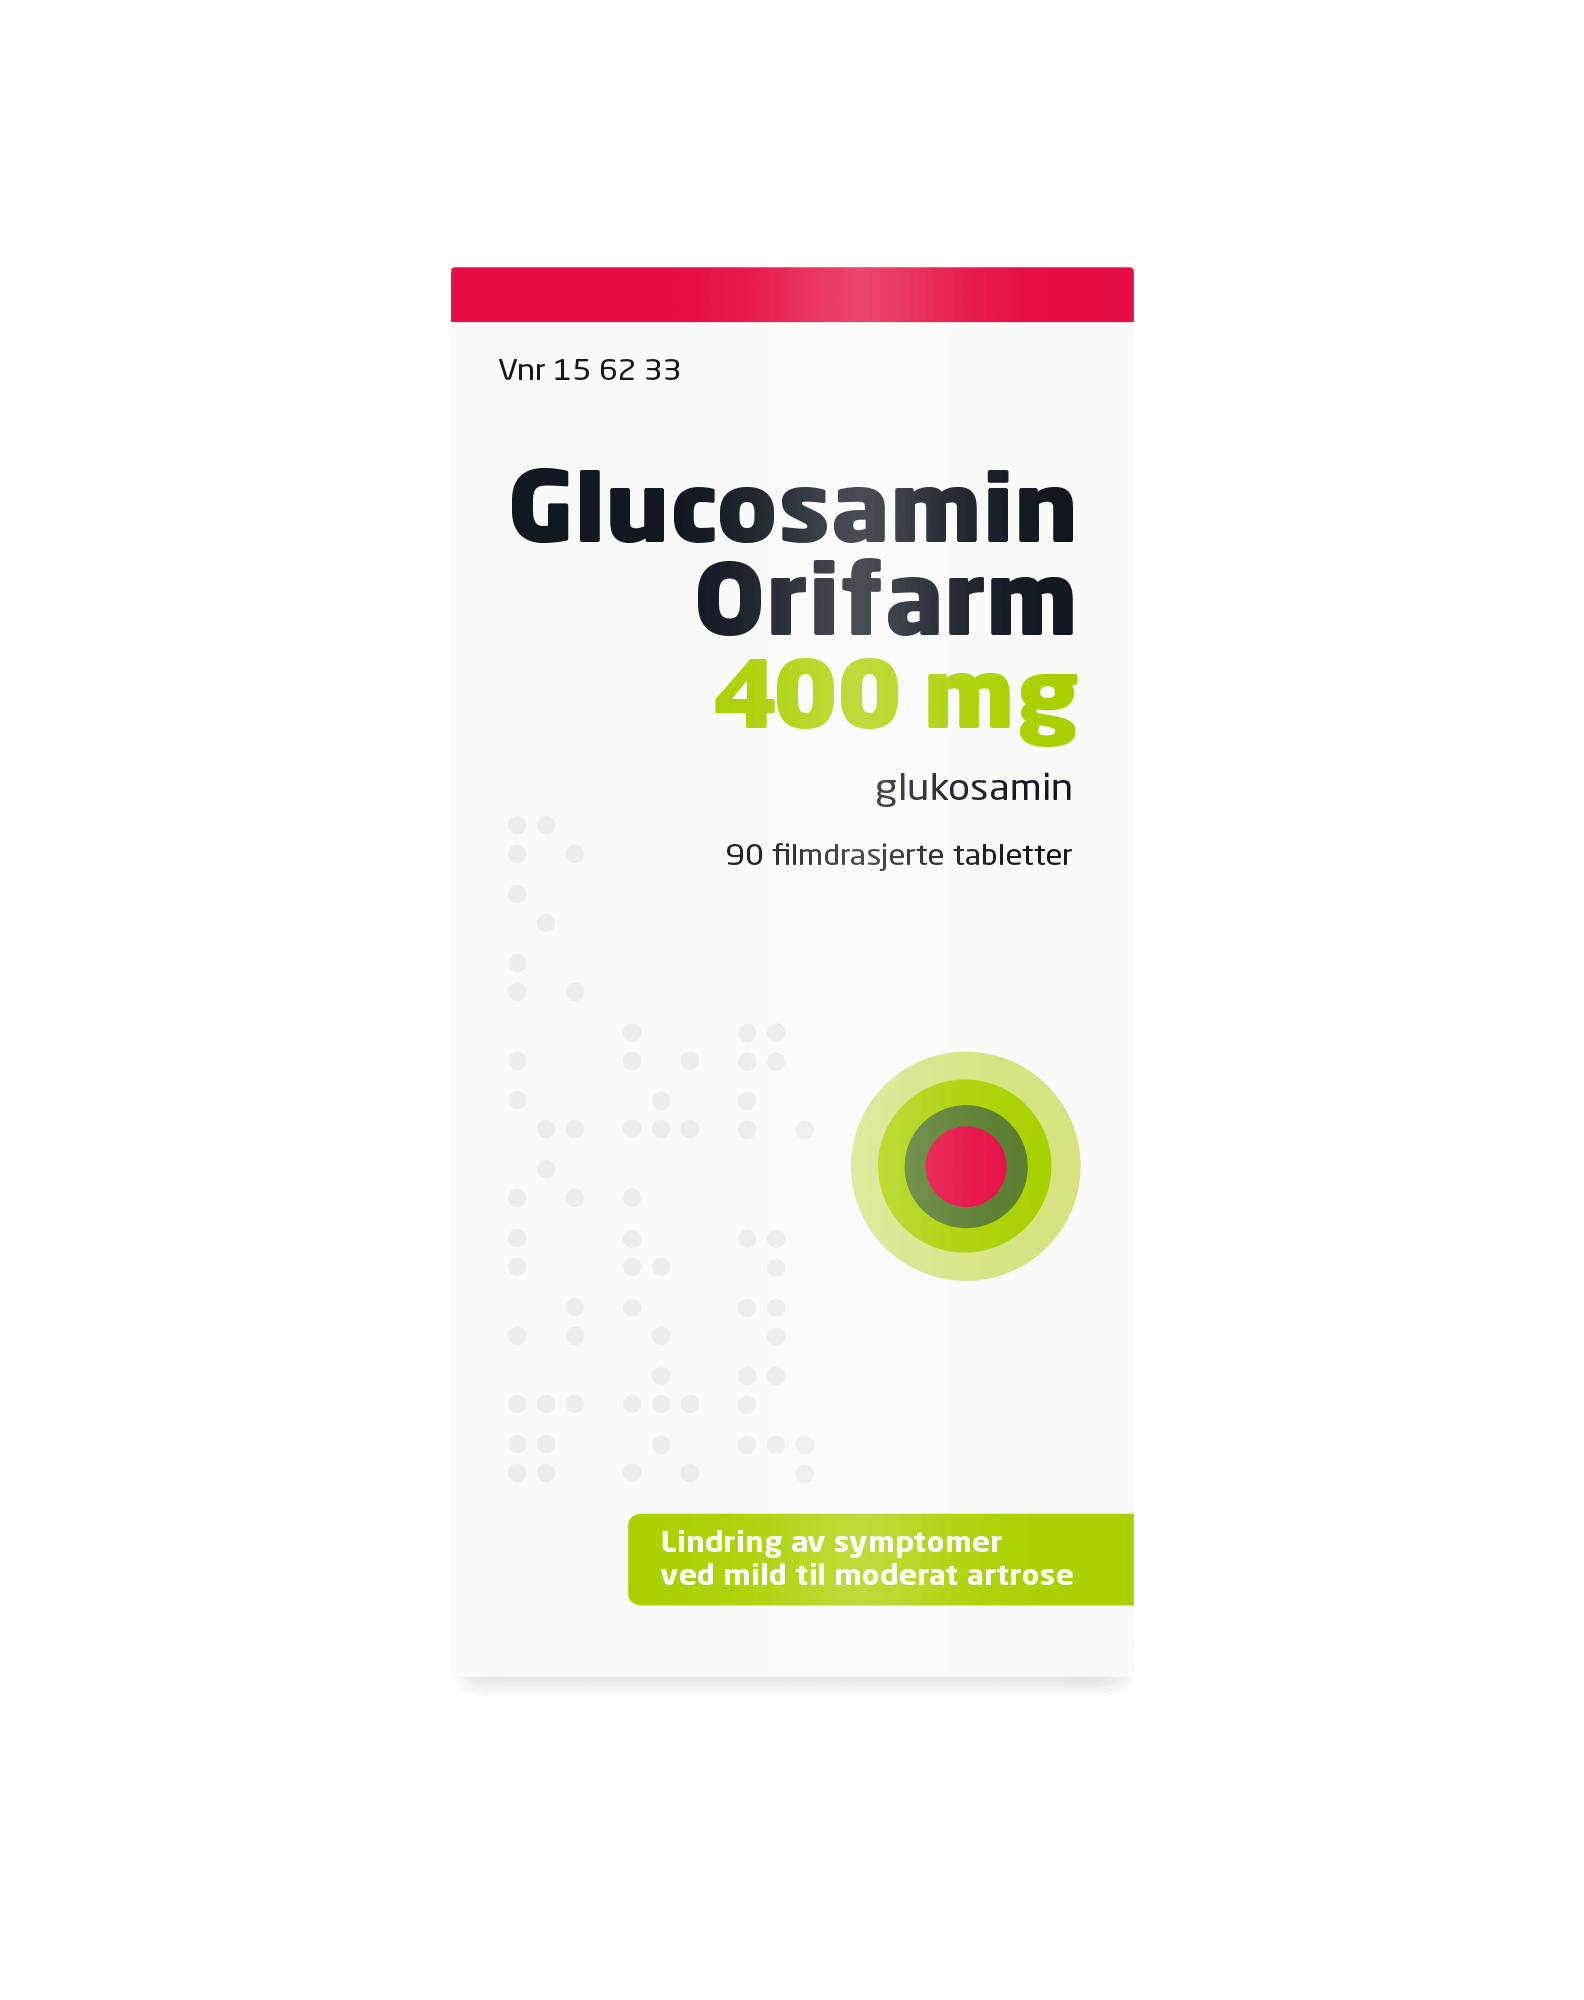 Glucosamin Orifarm 400 mg